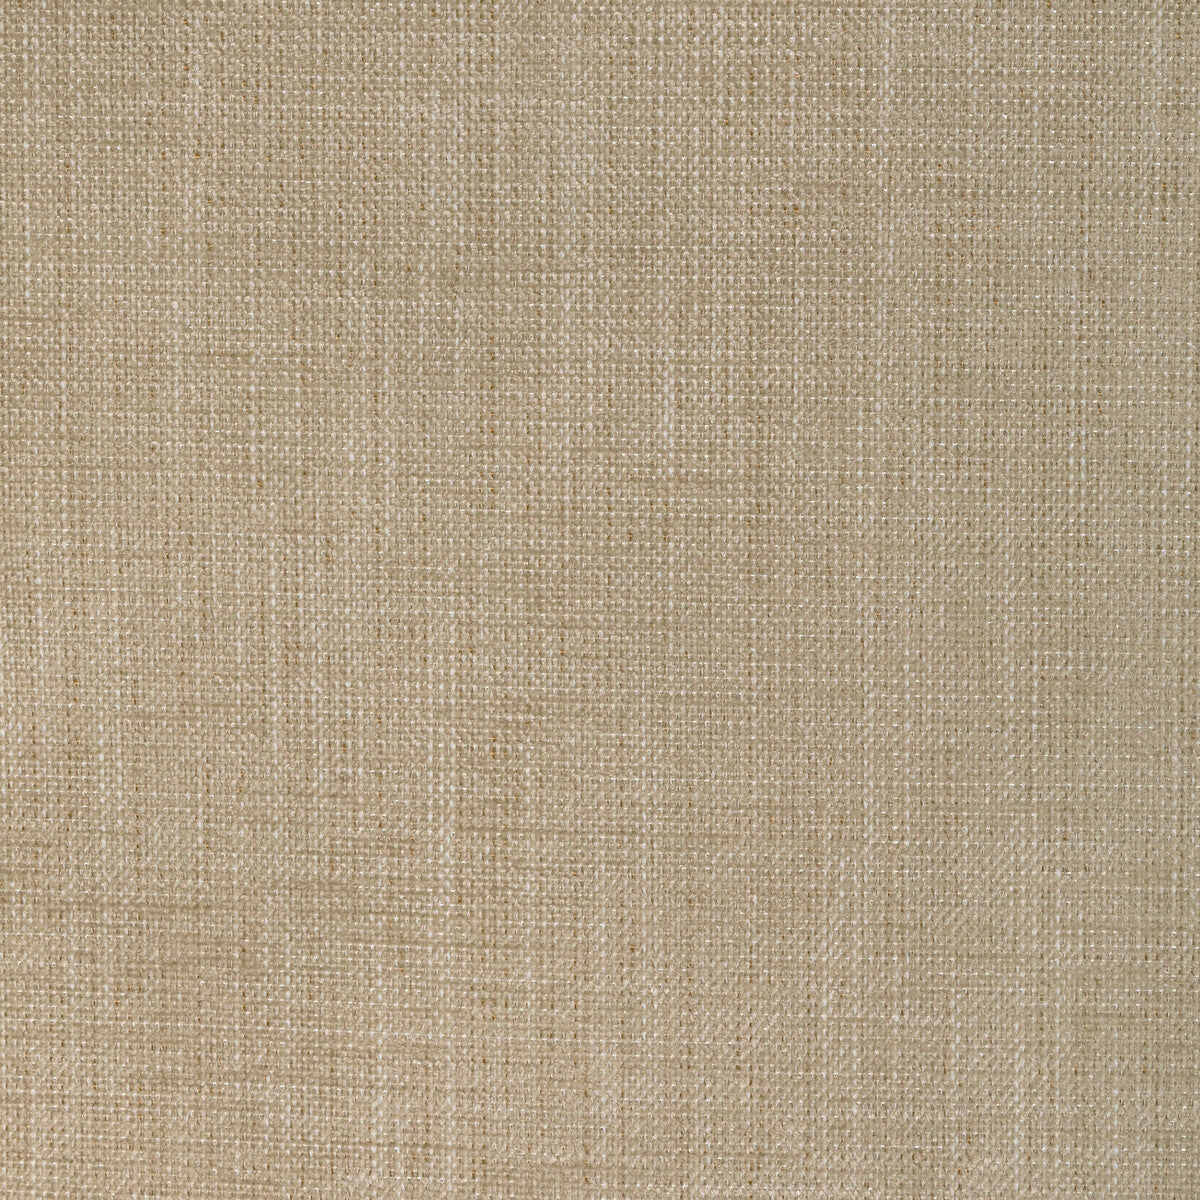 Poet Plain fabric in dune color - pattern 36649.116.0 - by Kravet Basics